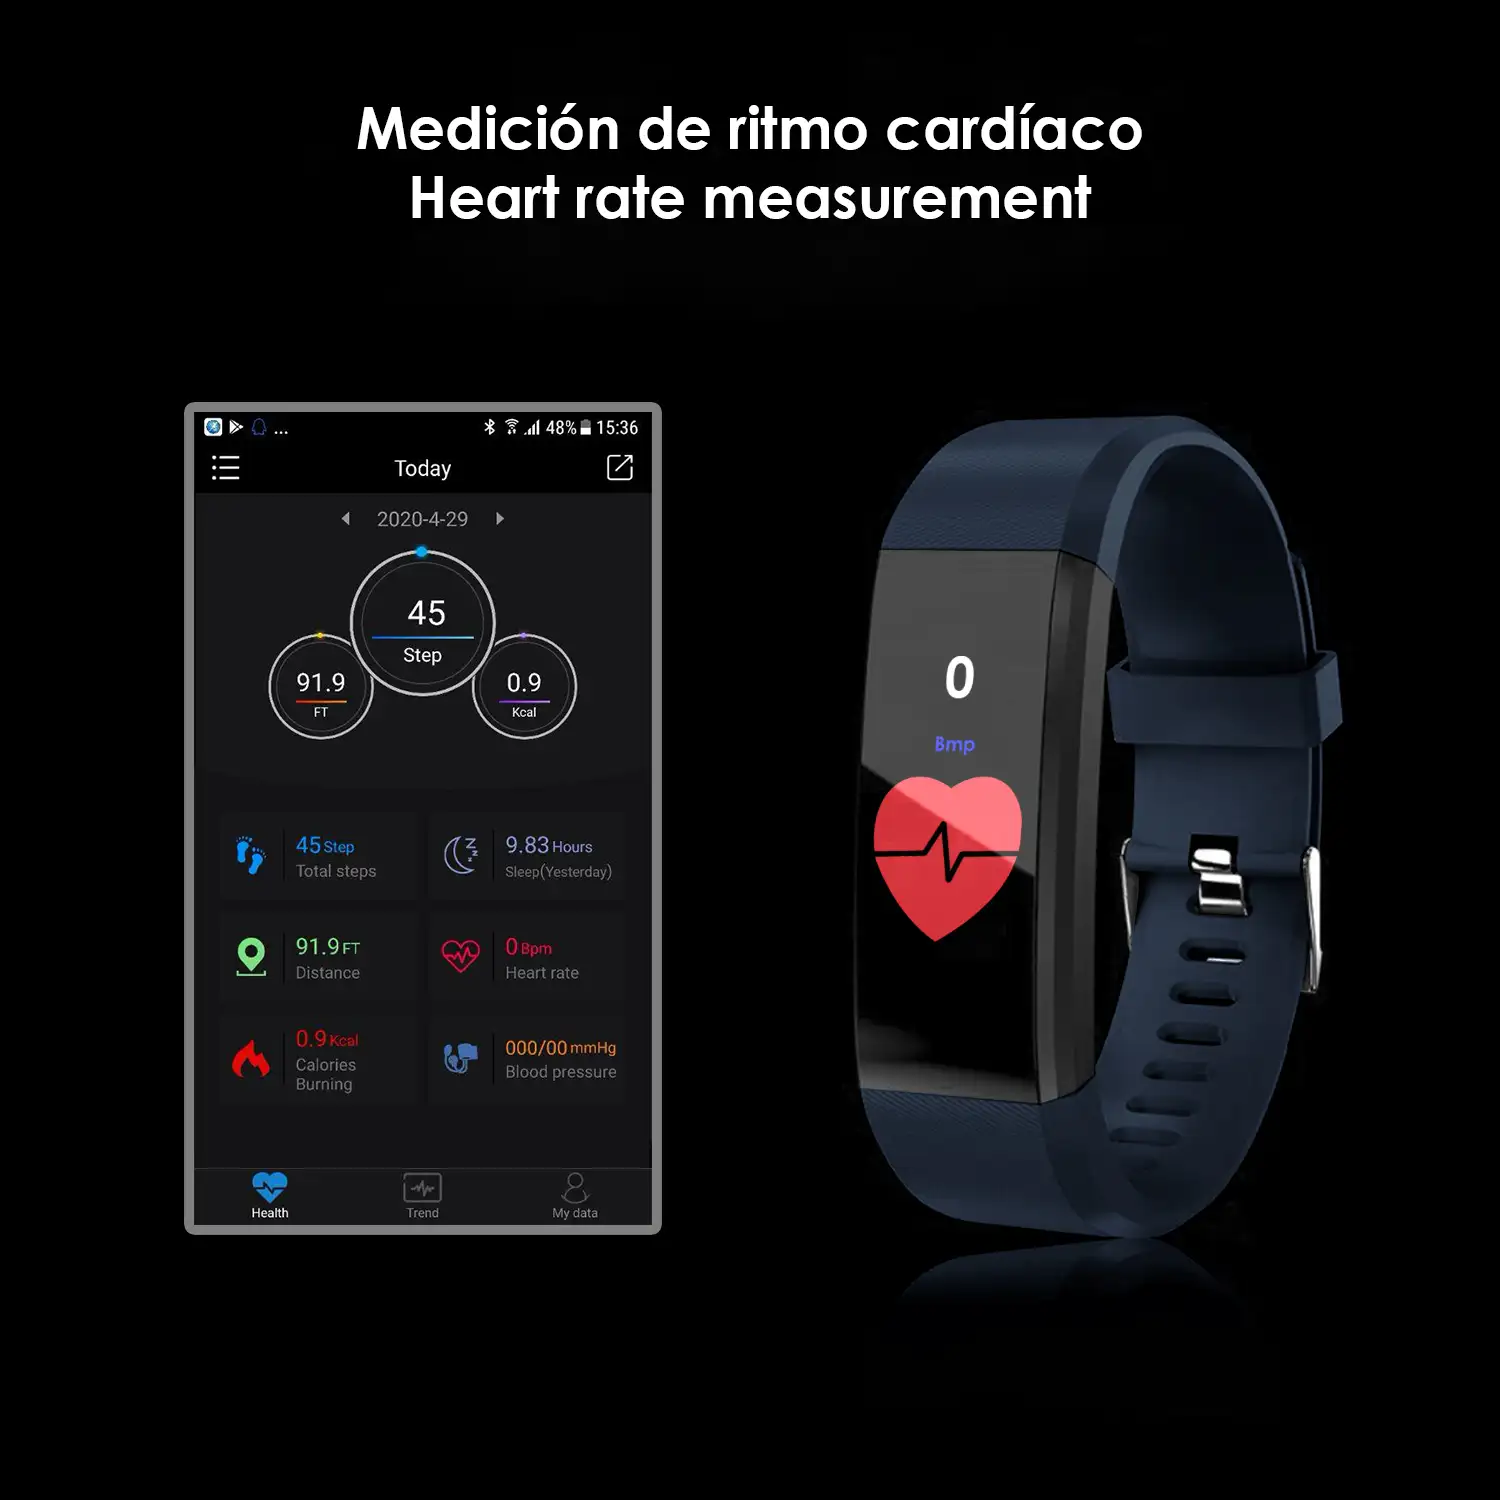 Brazalete inteligente ID115 Plus con termómetro, monitor cardíaco, tensión y oxígeno en sangre.